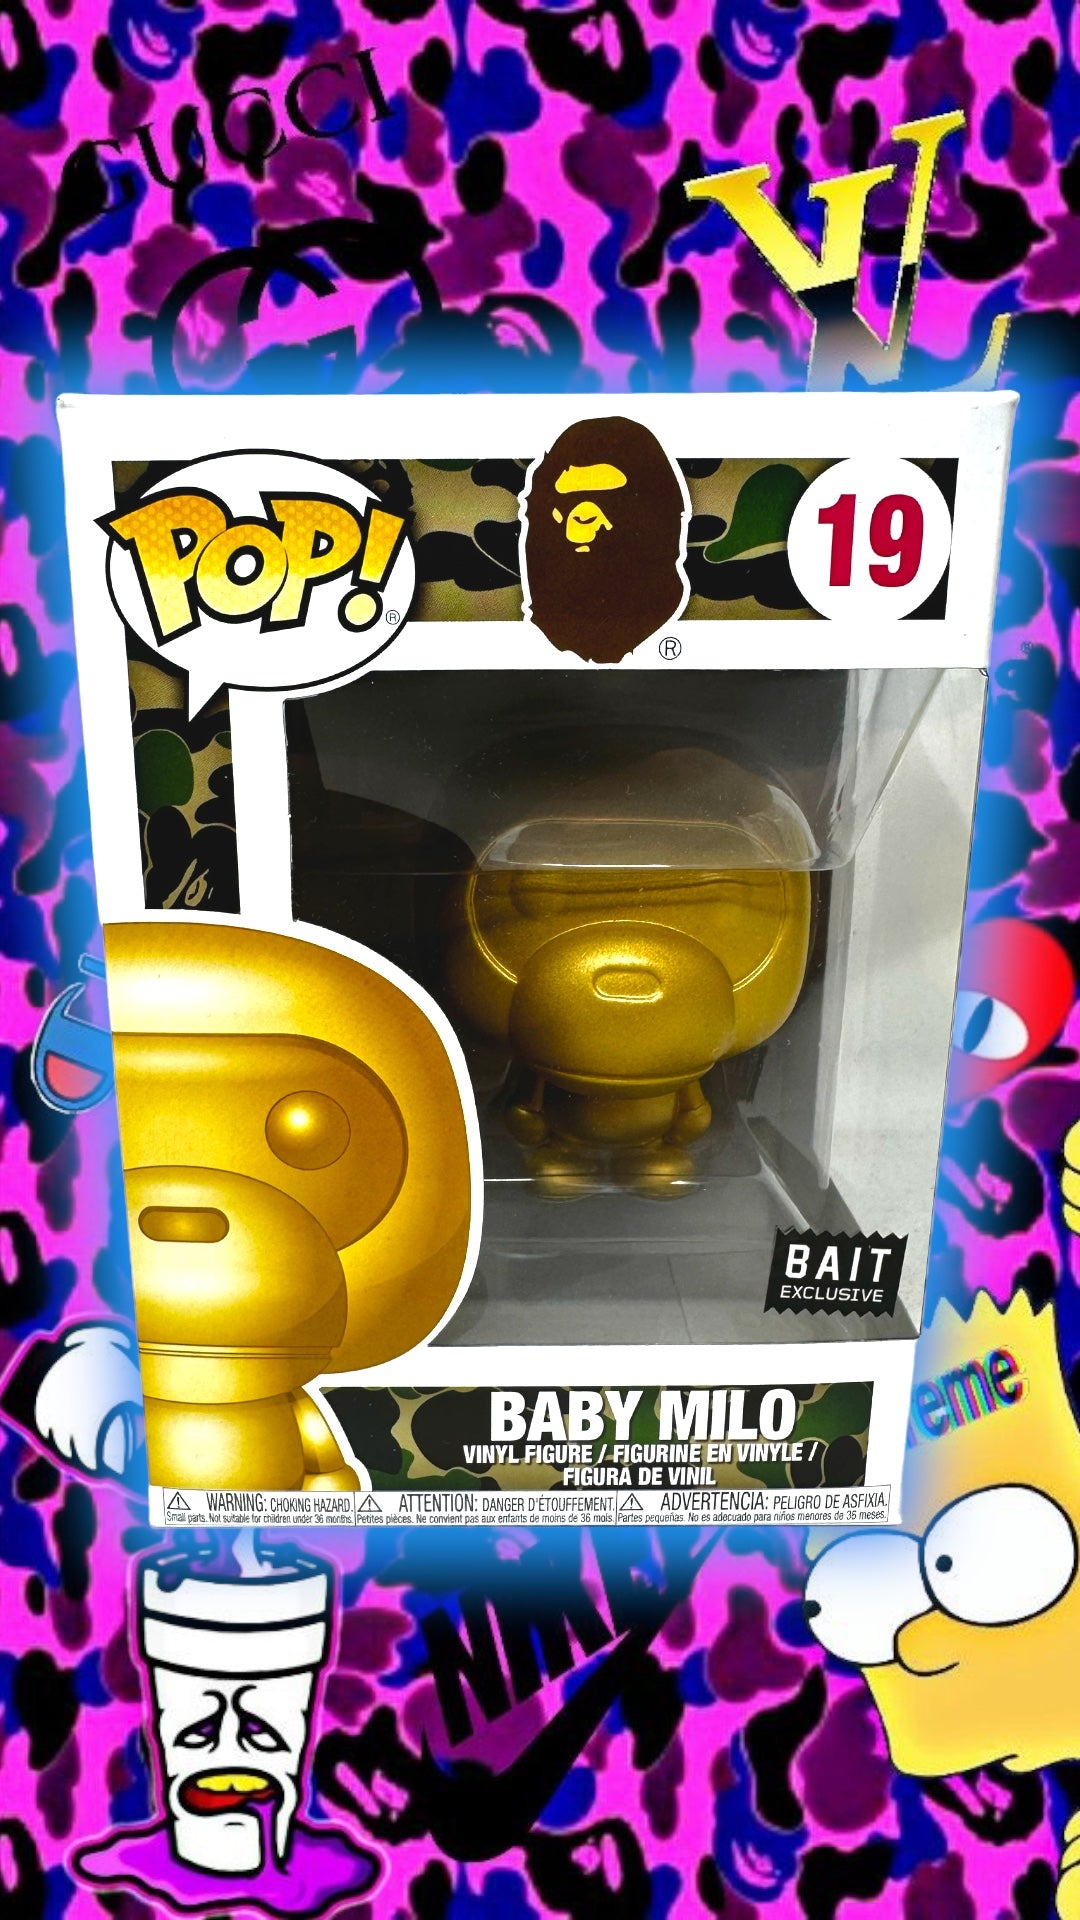 2018 Bait Exclusive Bape Baby Milo Gold